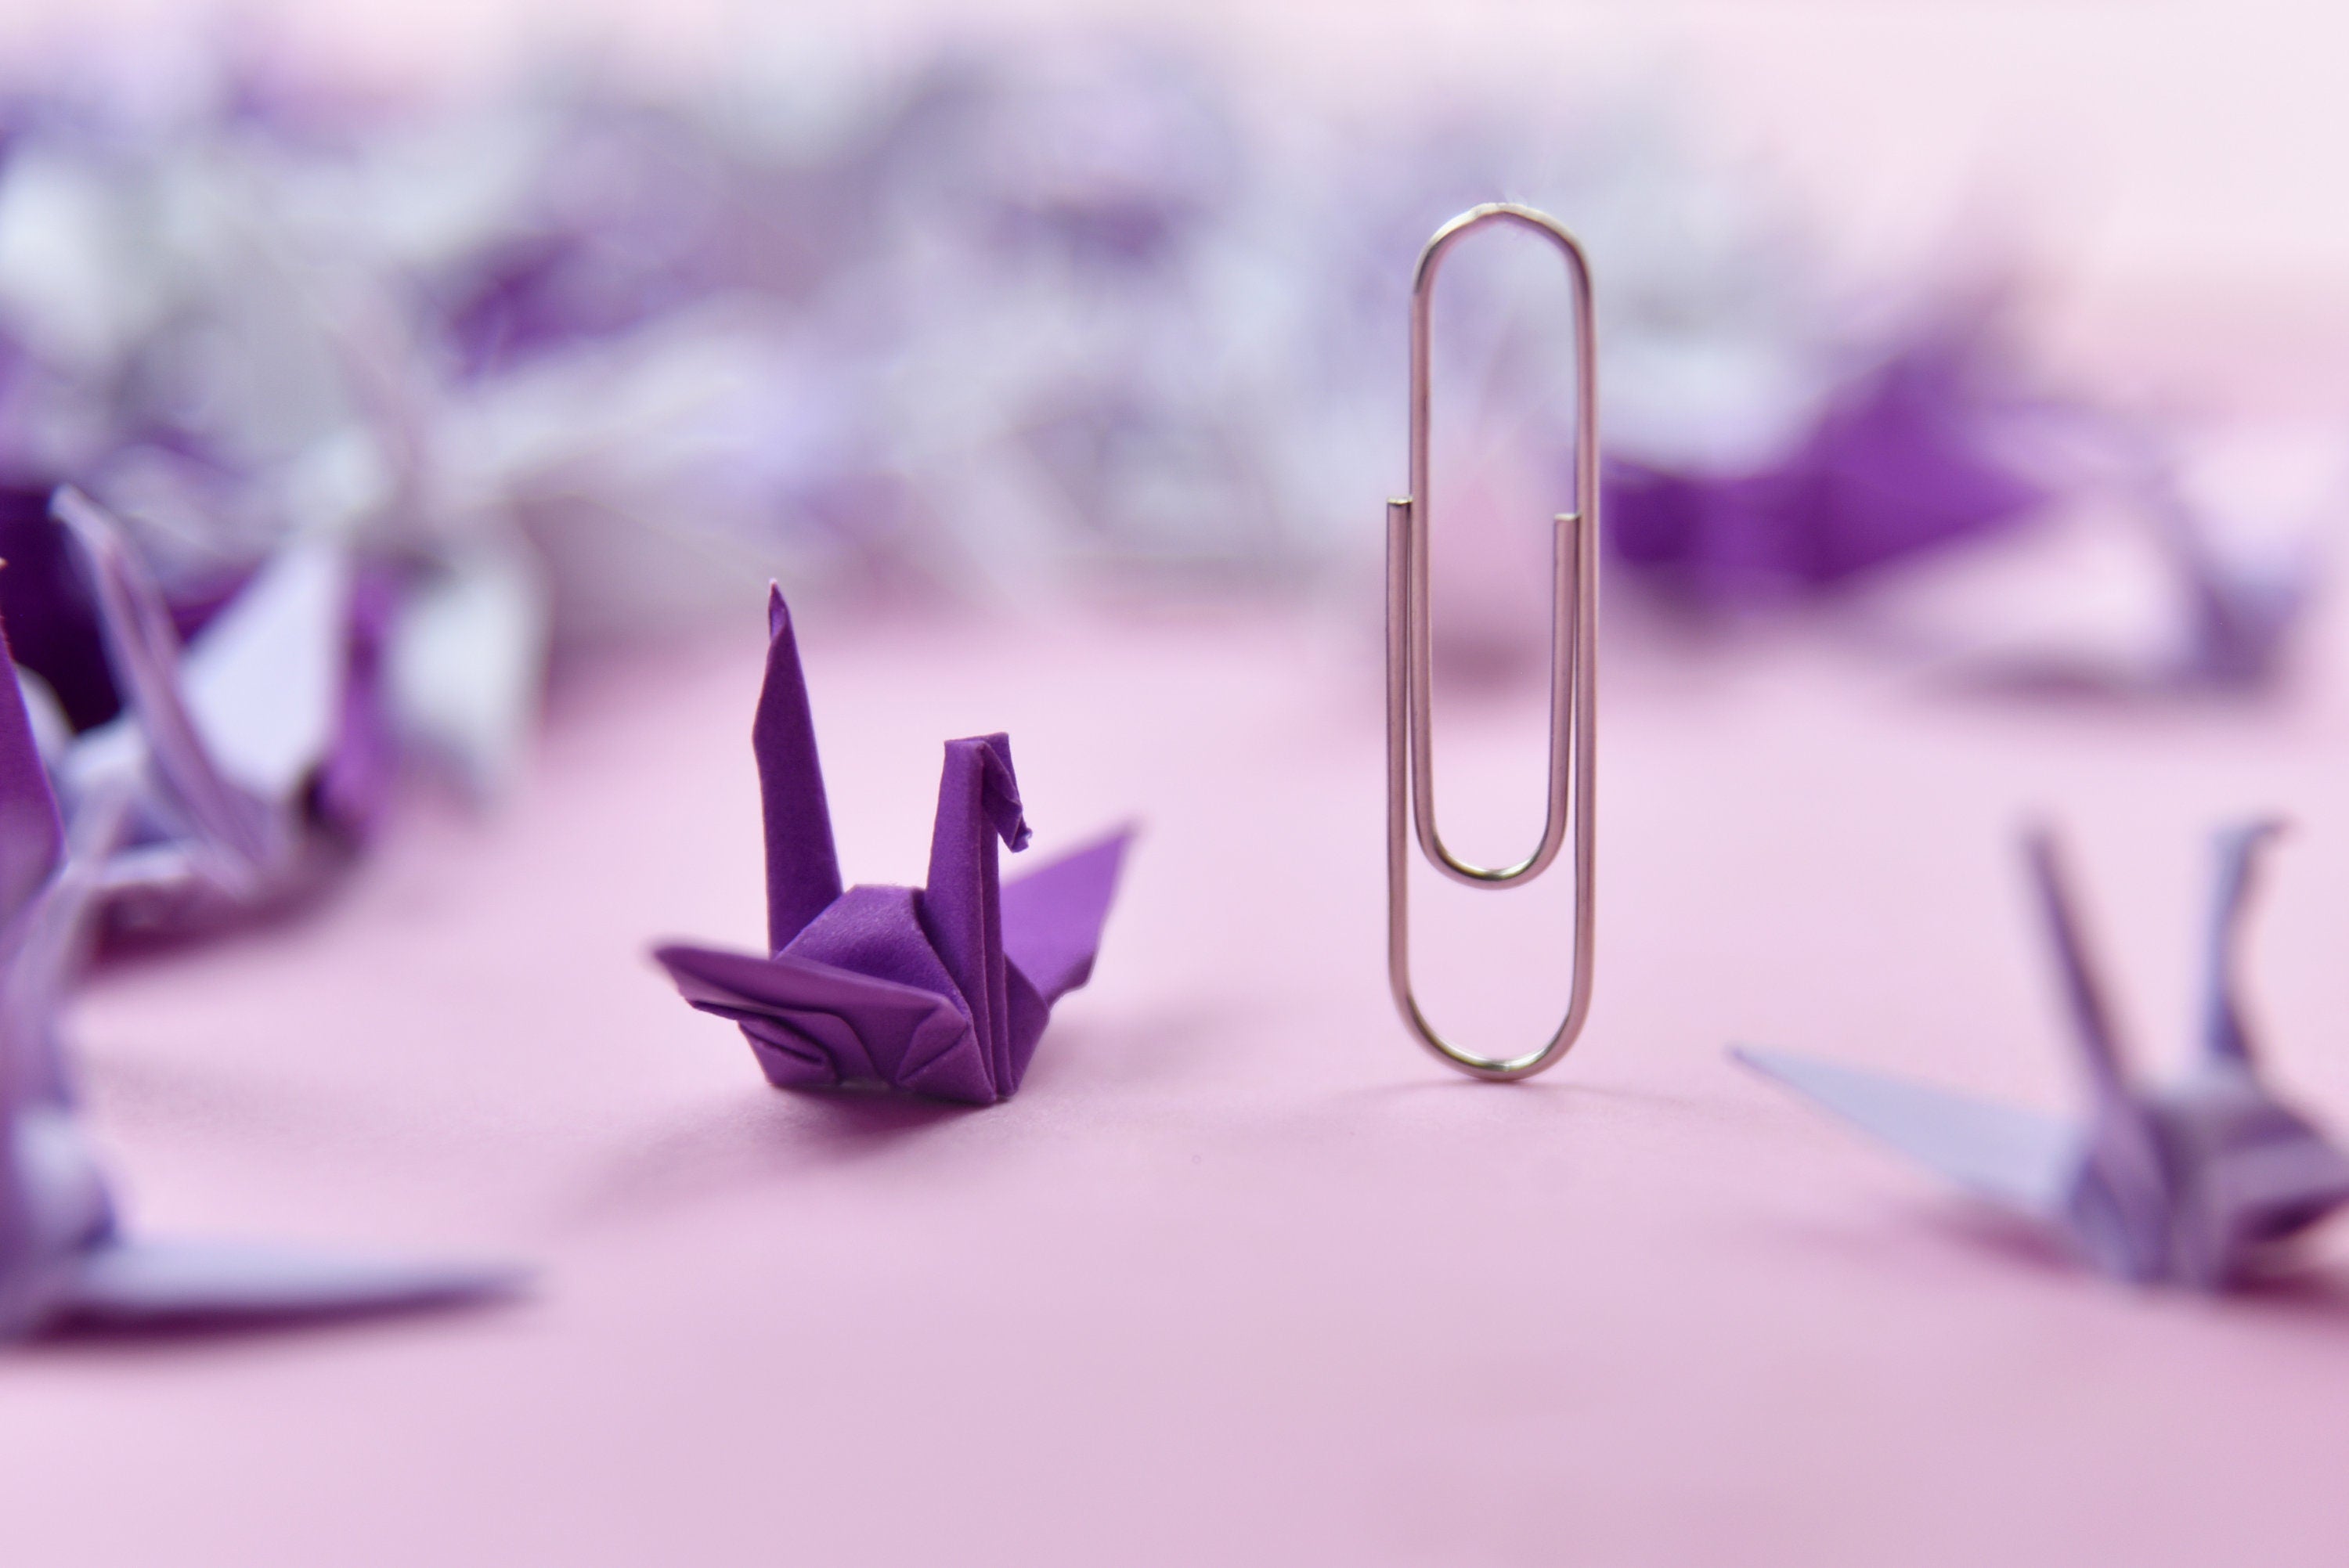 1000 Origami Paper Crane Purple Shade - Origami Cranes - Prefabricado - Pequeño 1.5x1.5 pulgadas para decoración de bodas, regalo de aniversario, San Valentín